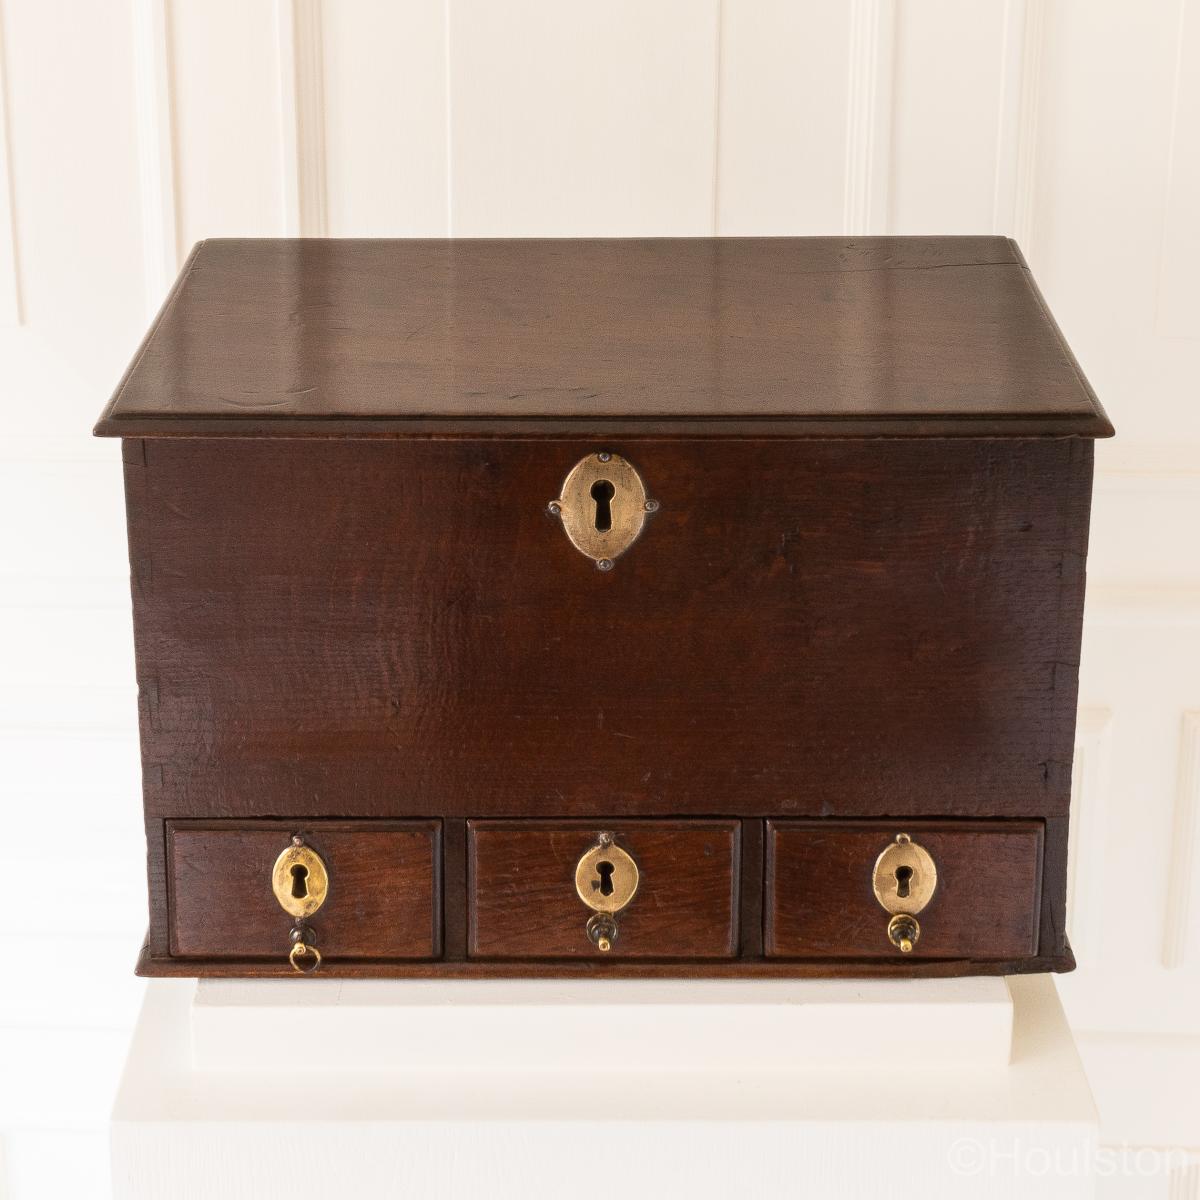 A small Queen Anne Oak table-top box, circa 1710